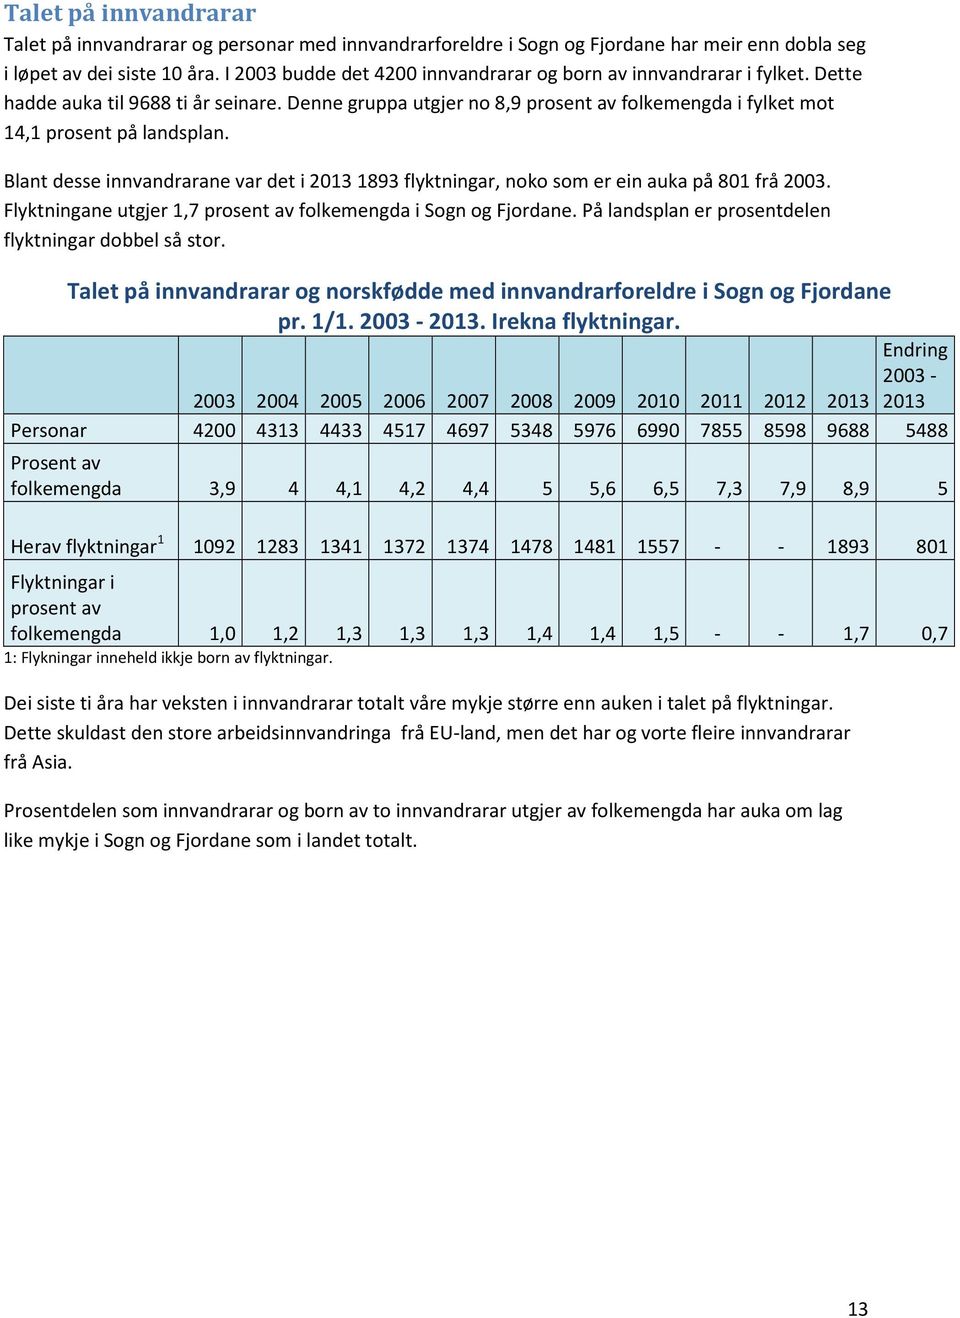 Blant desse innvandrarane var det i 2013 1893 flyktningar, noko som er ein auka på 801 frå 2003. Flyktningane utgjer 1,7 prosent av folkemengda i Sogn og Fjordane.